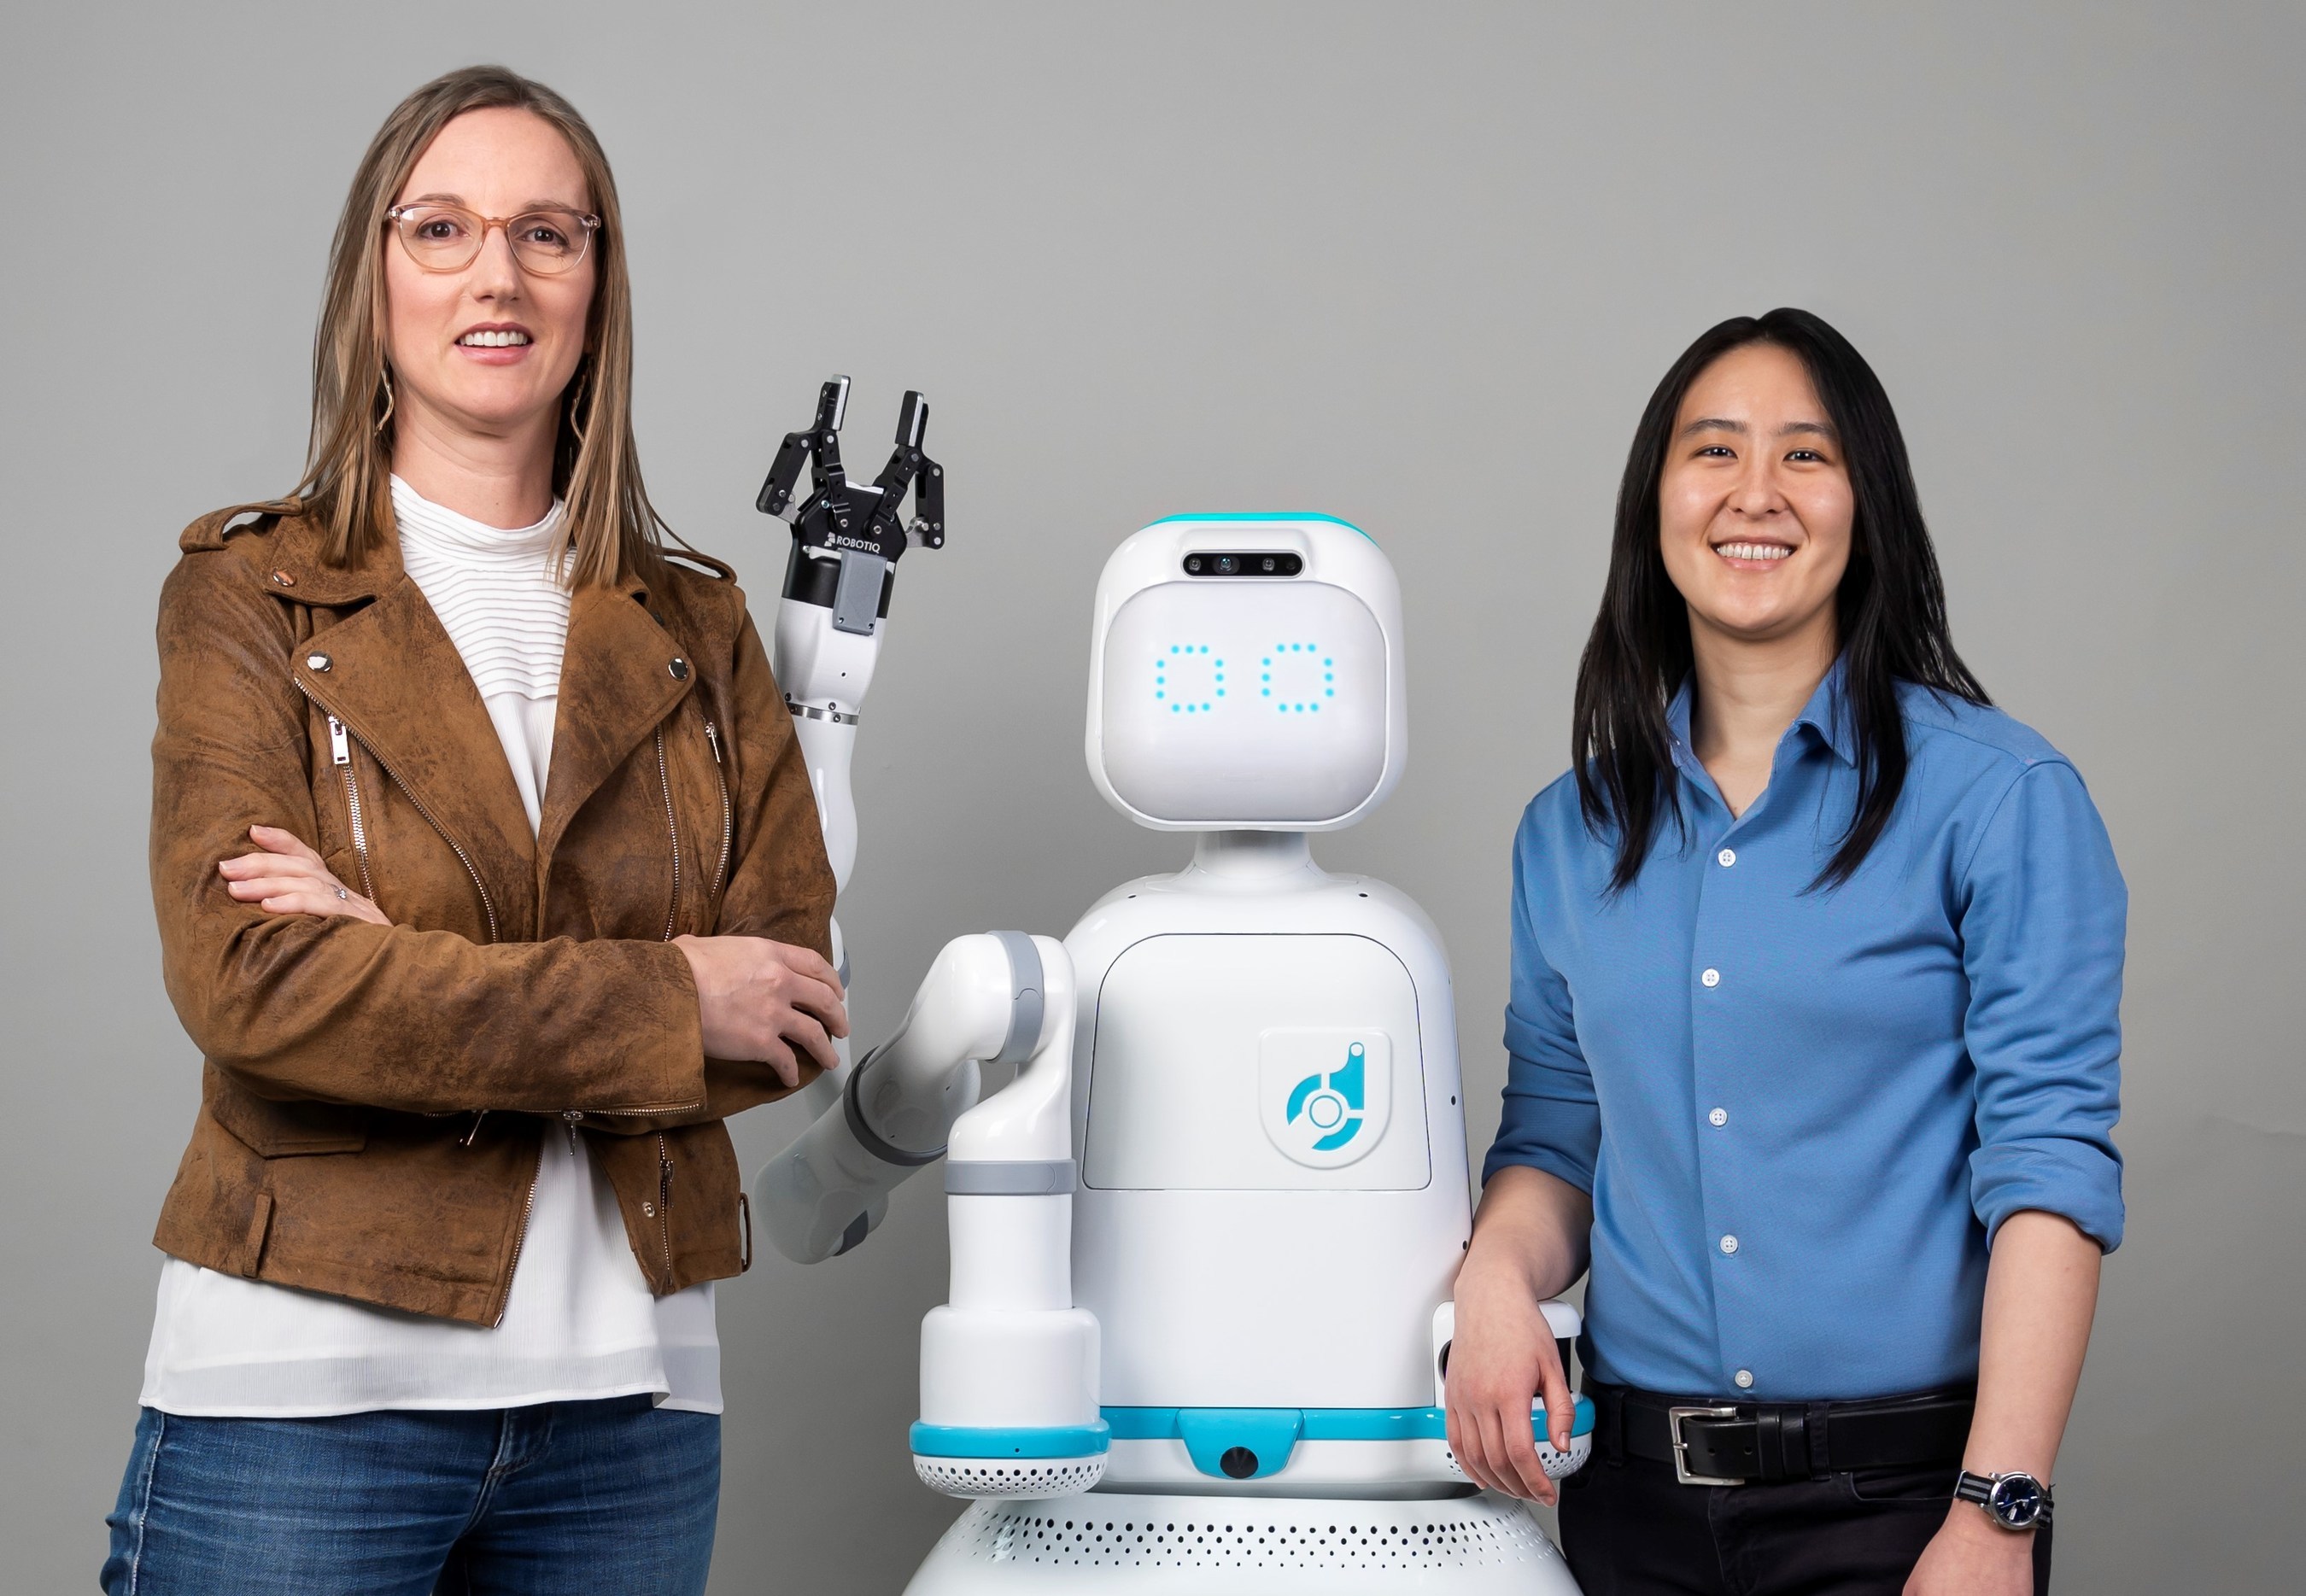 Nurse-assisting robotics firm Diligent raises $30M | TechCrunch